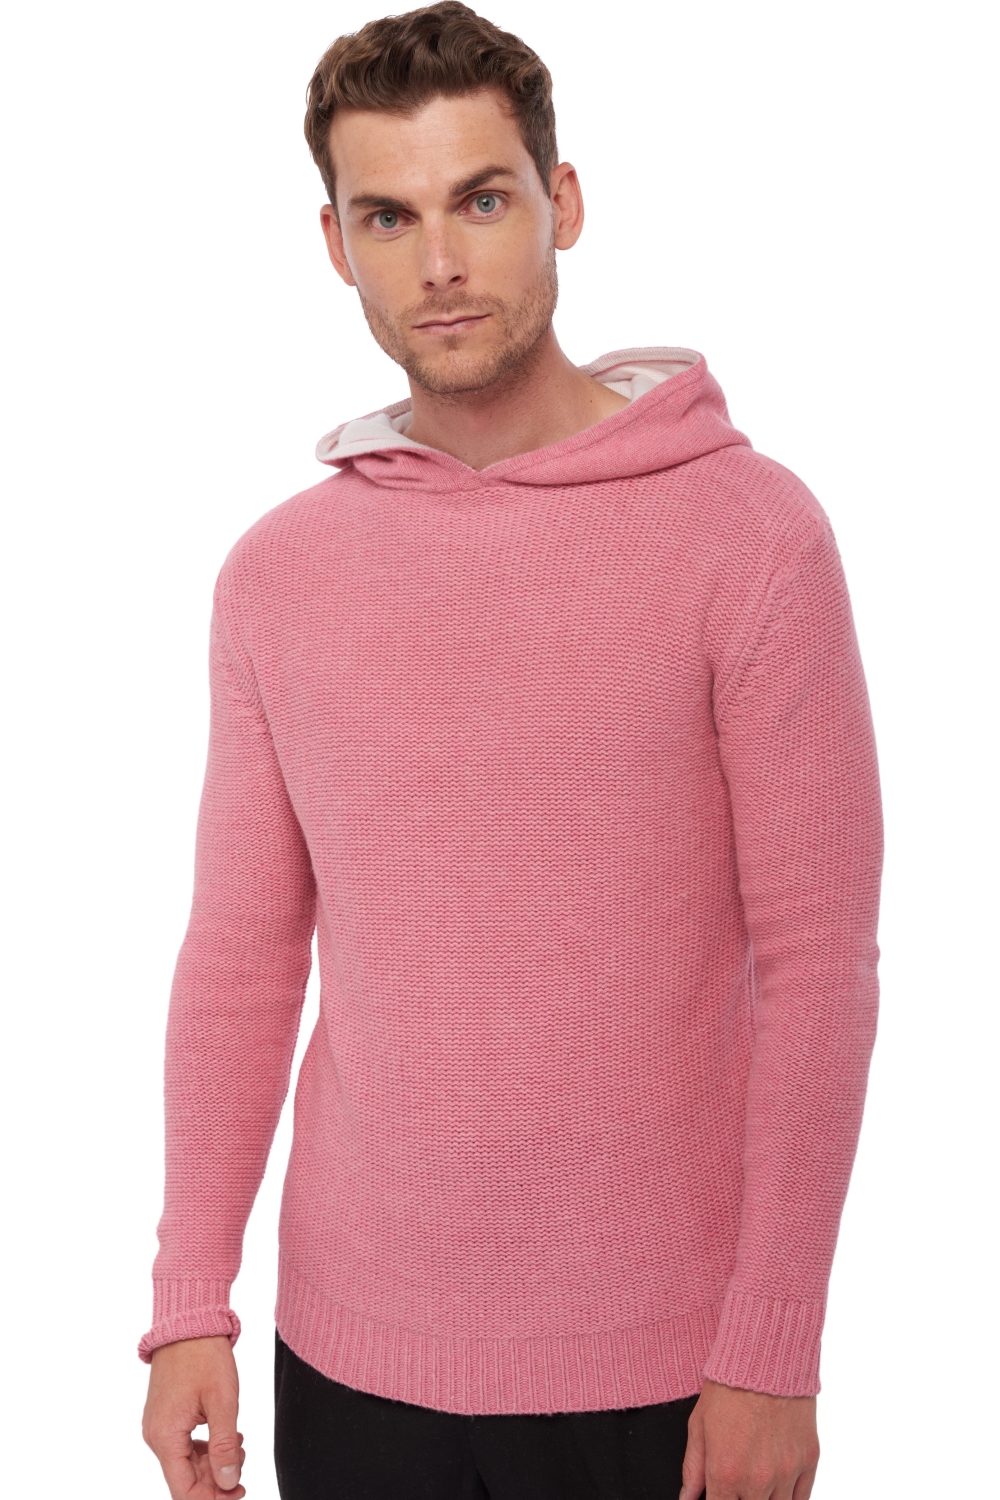 Yak kaschmir pullover herren conor pink off white 3xl